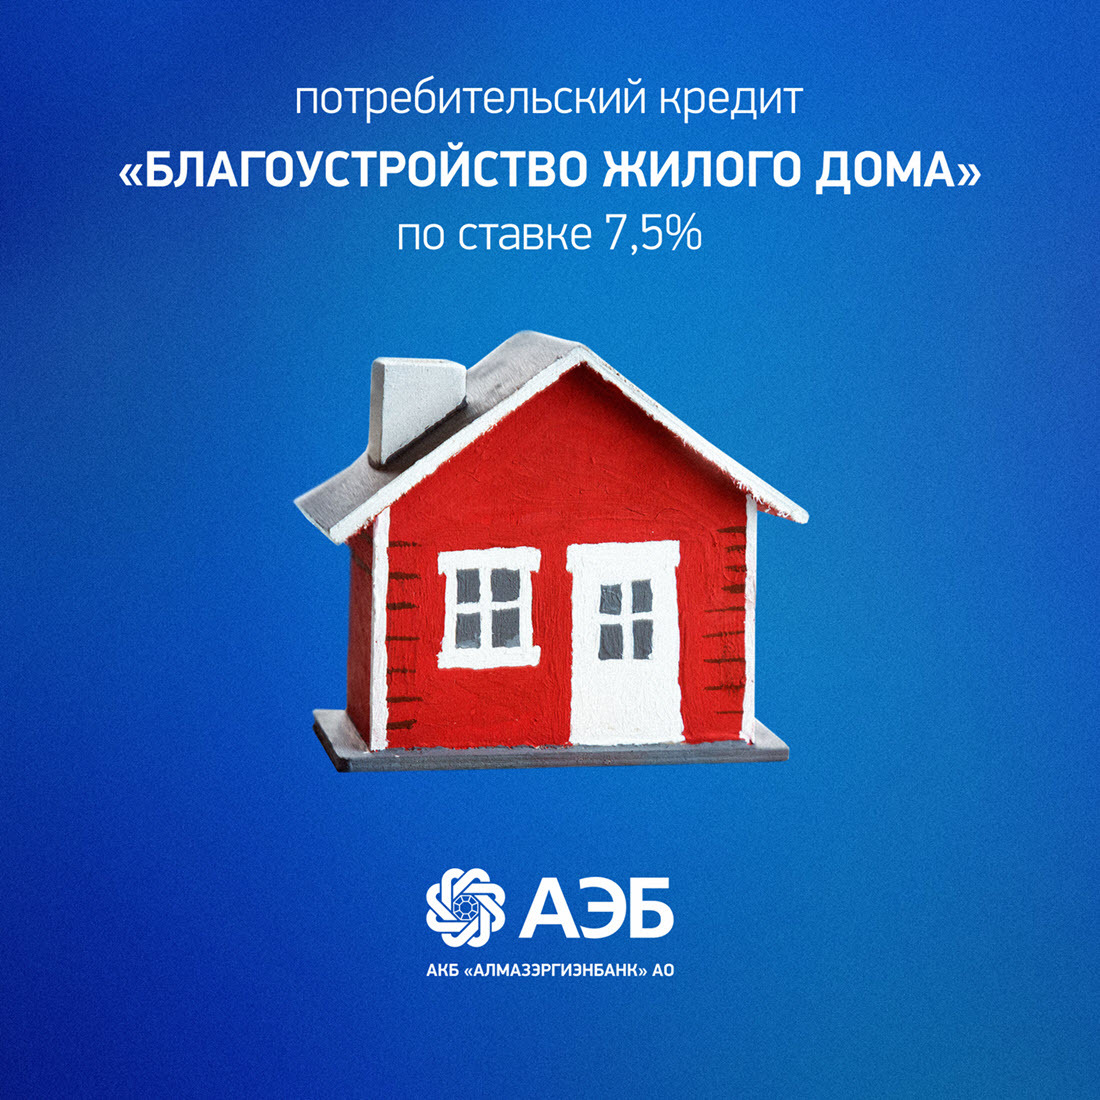 АЭБ предлагает кредит на благоустройство жилого дома по ставке 7,5%